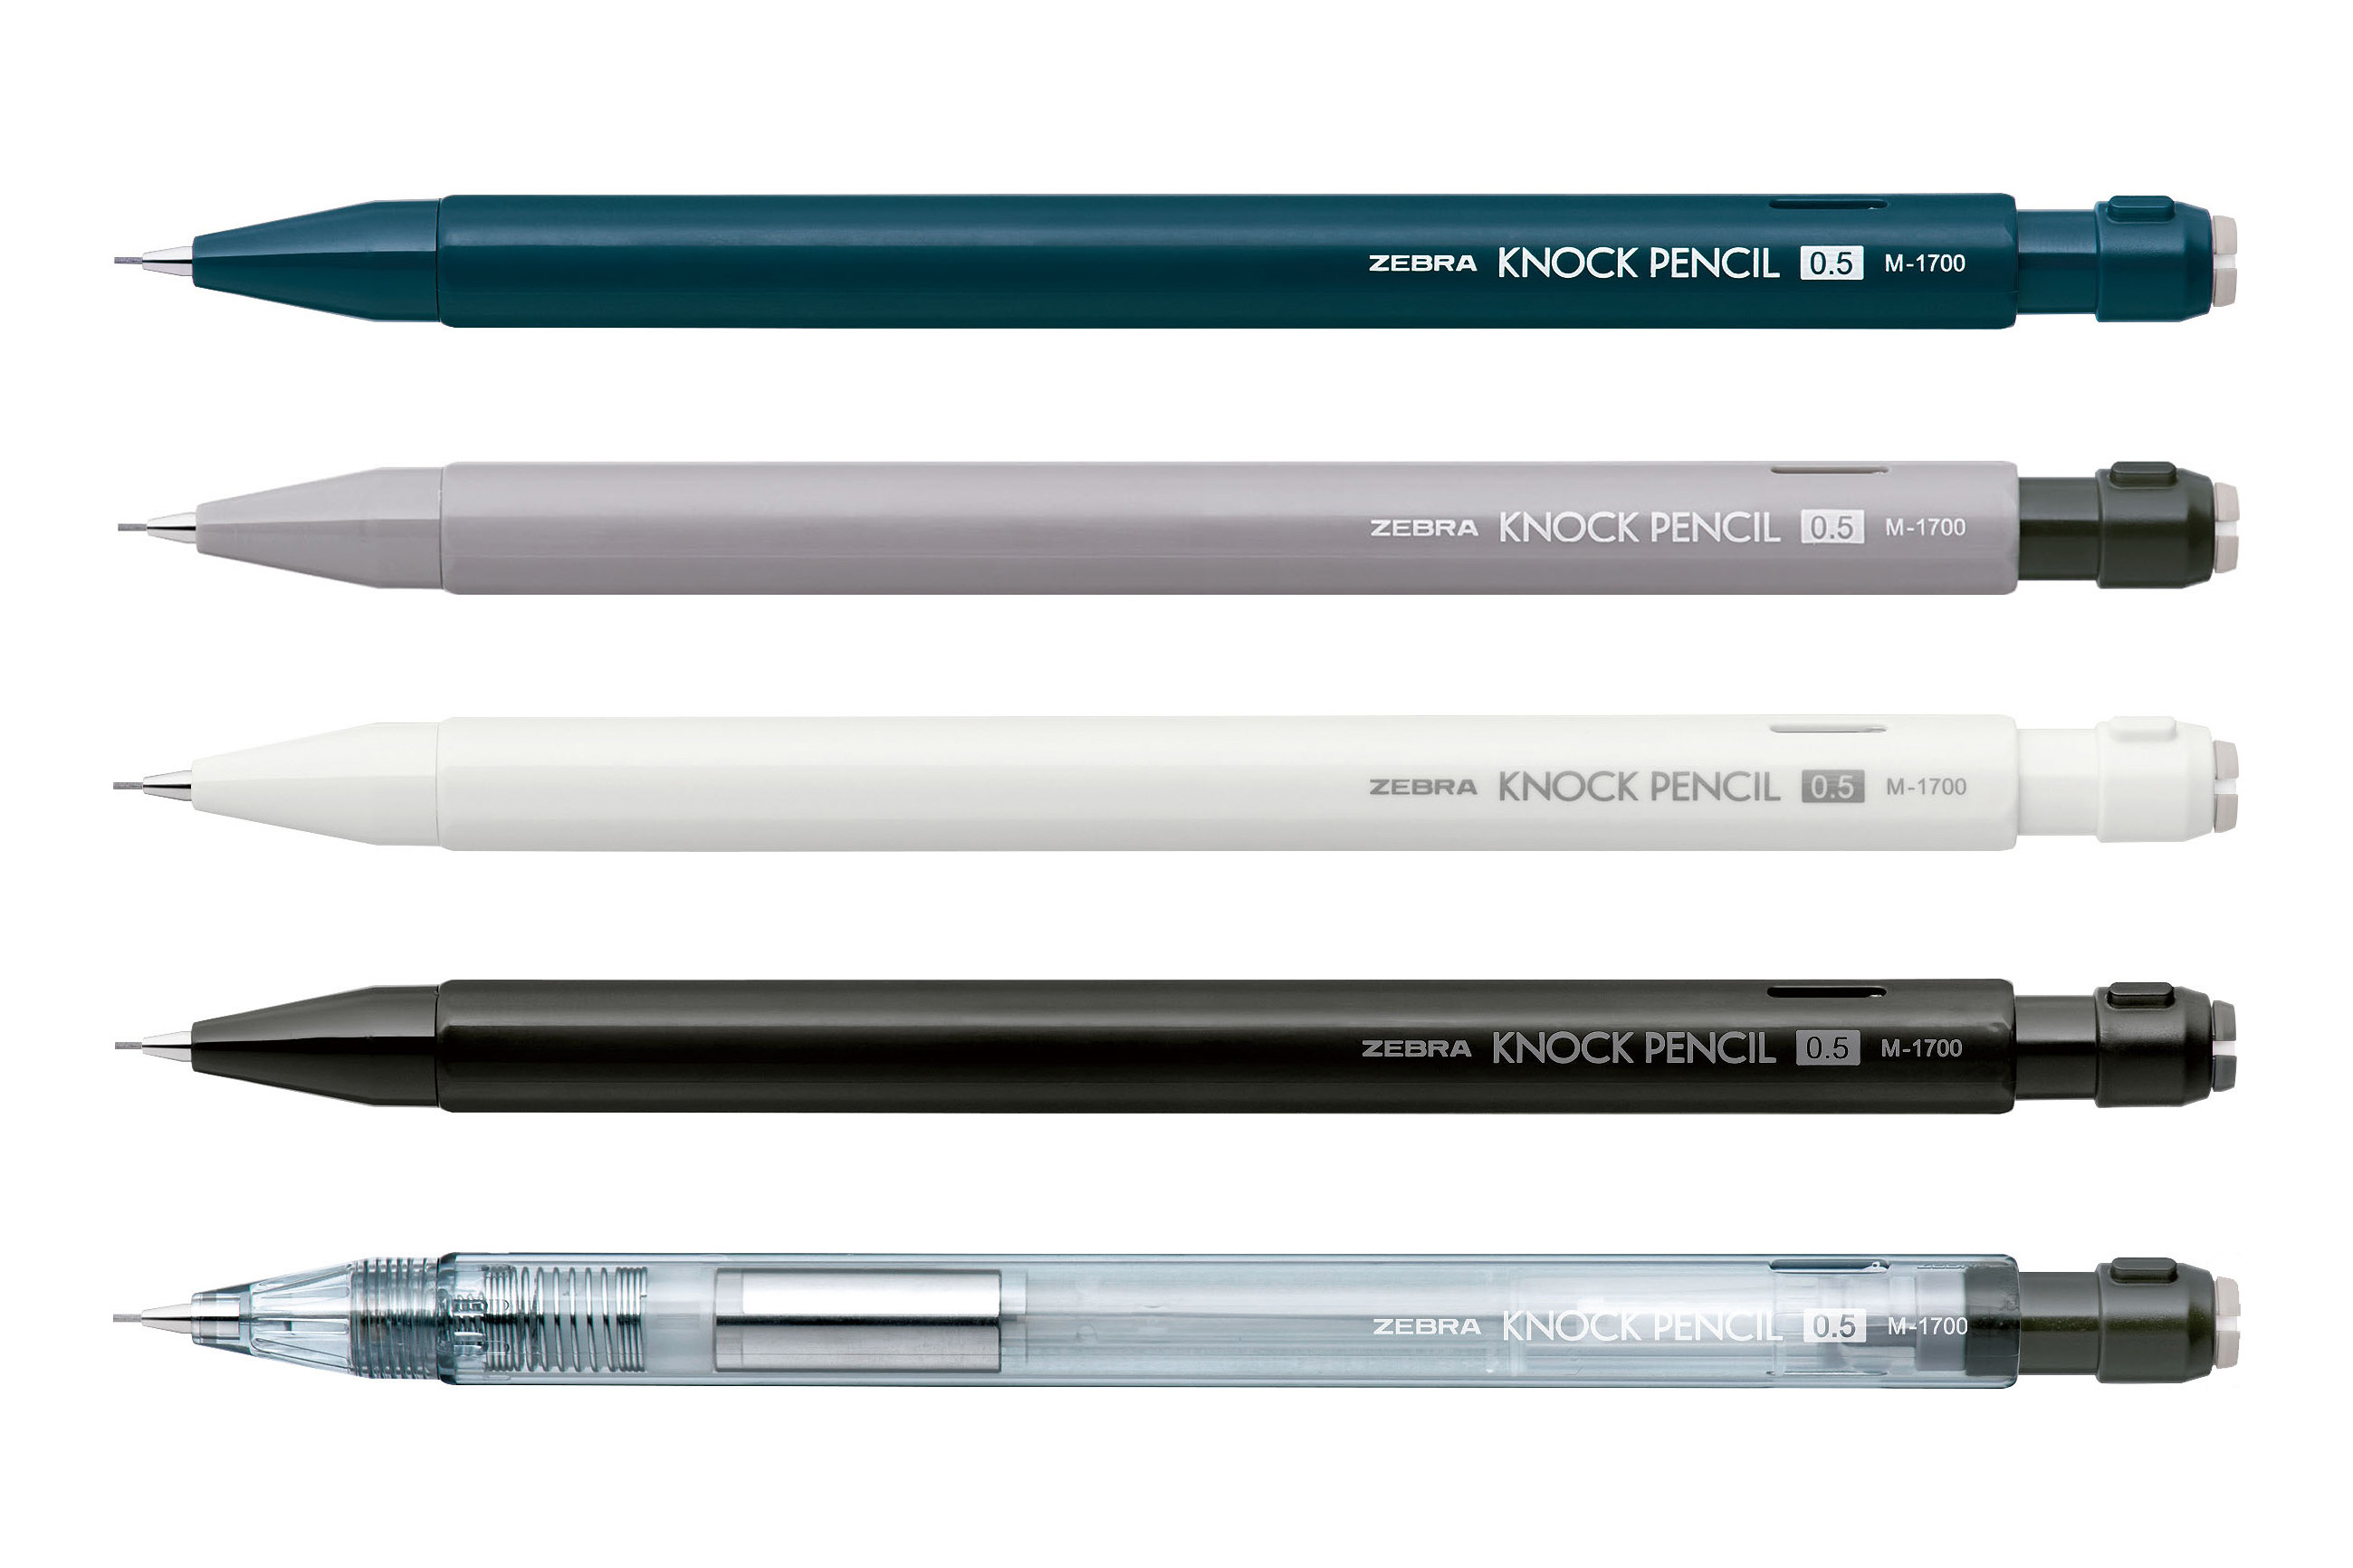 ゼブラ、鉛筆型シャープペン「ノックペンシル」令和版 - Impress Watch